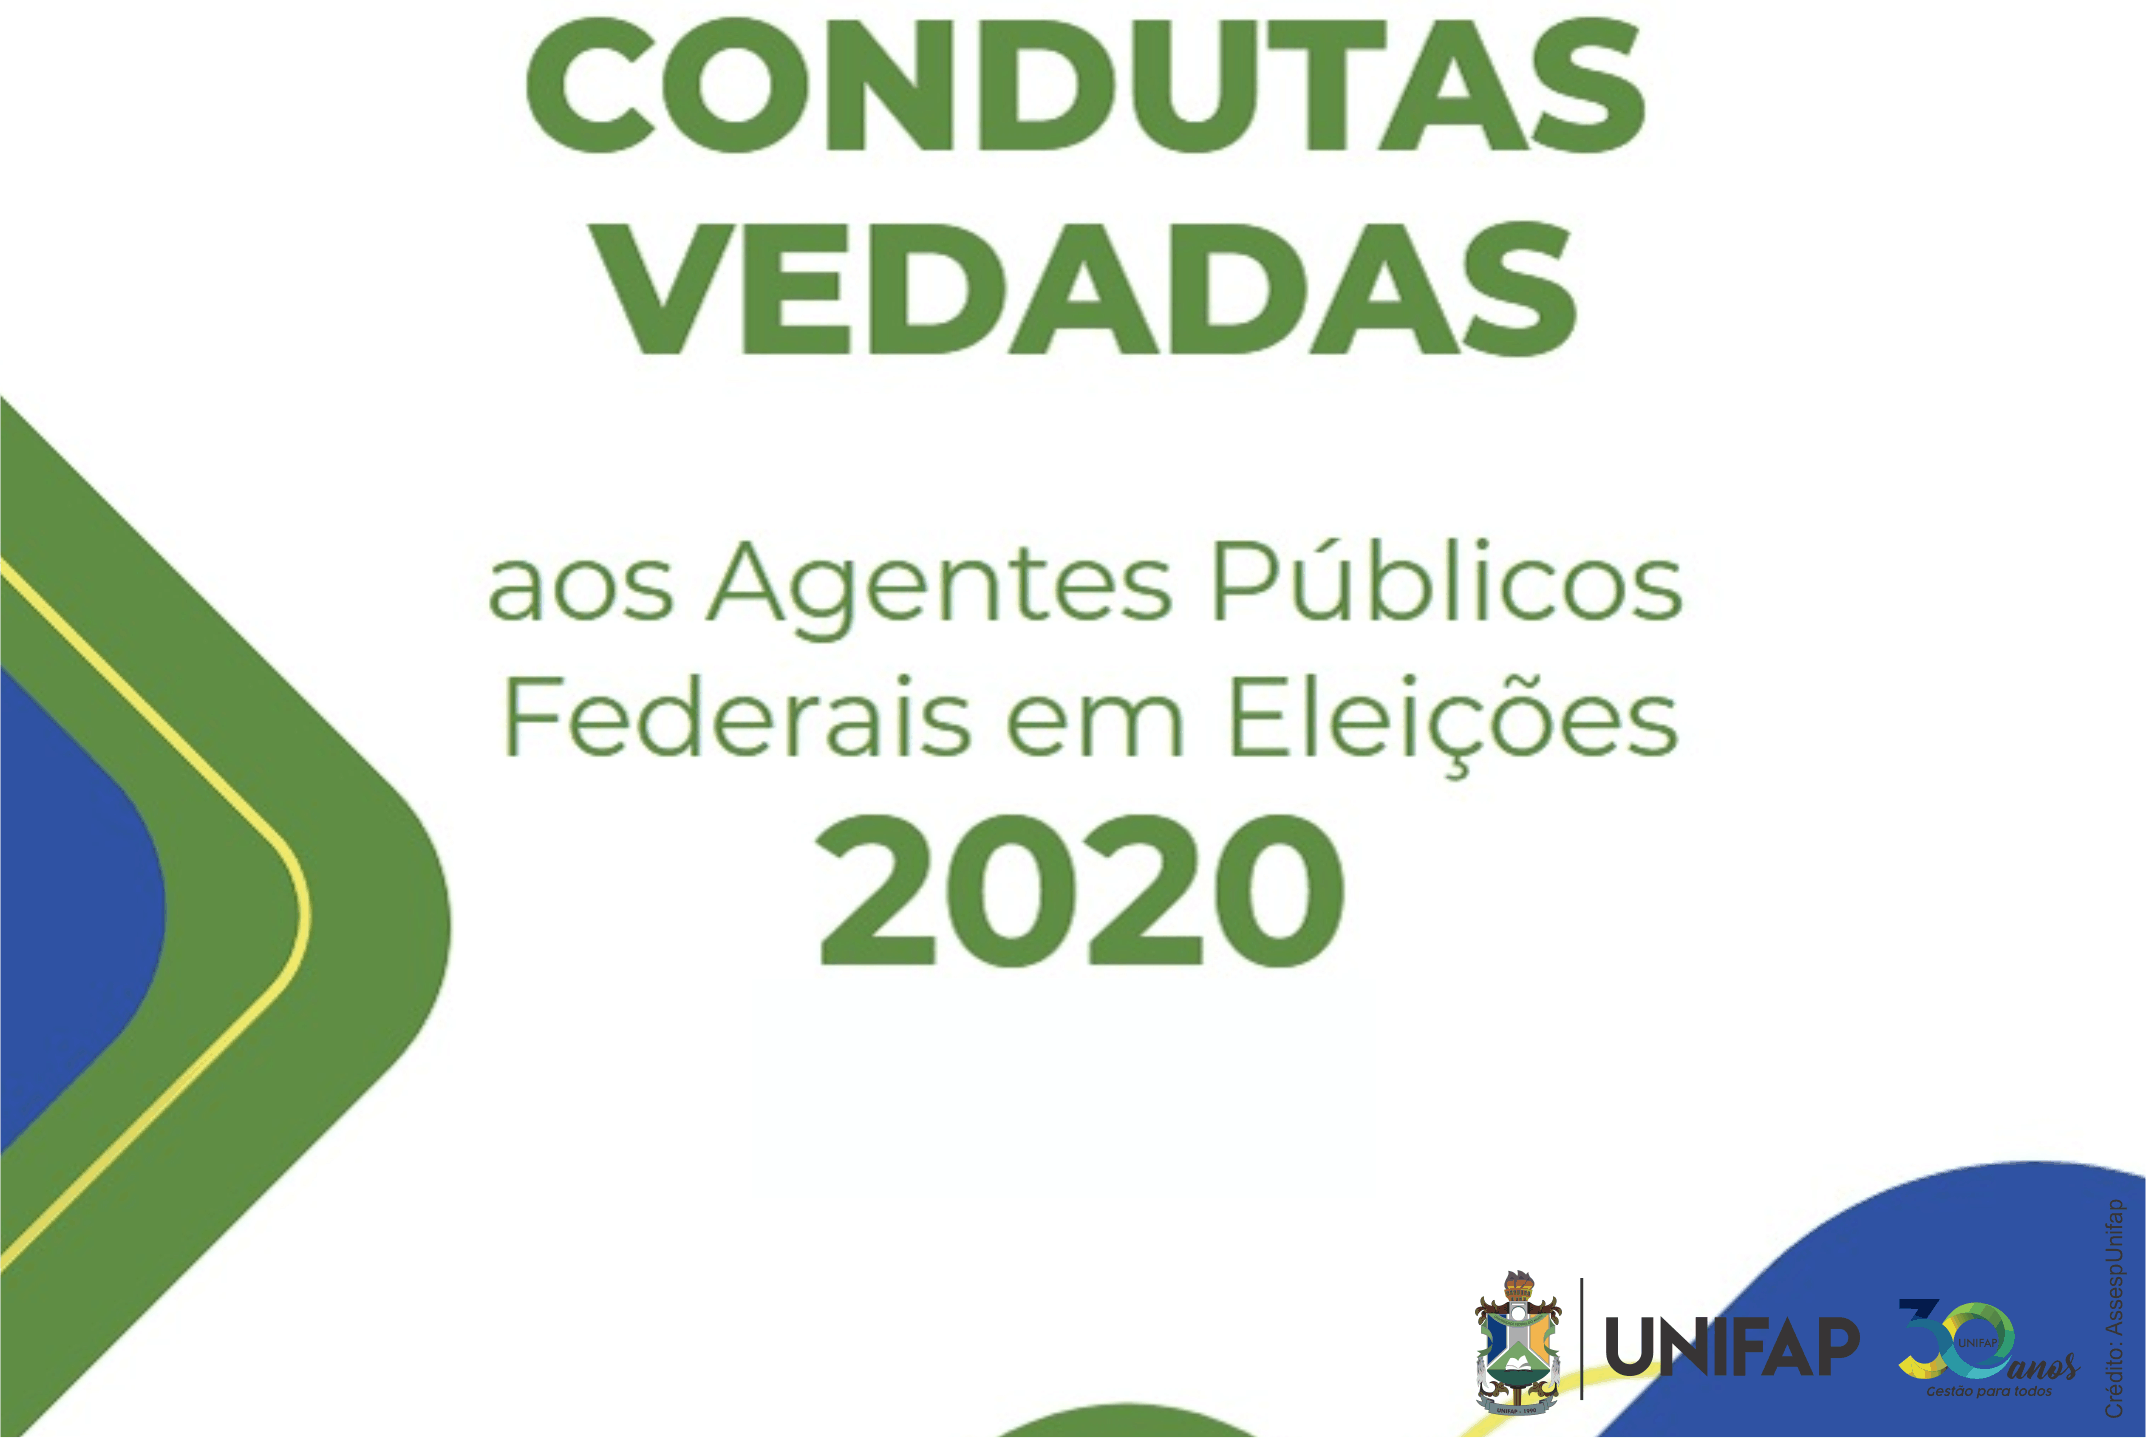 AGU orienta sobre condutas vedadas aos agentes públicos federais nas eleições 2020